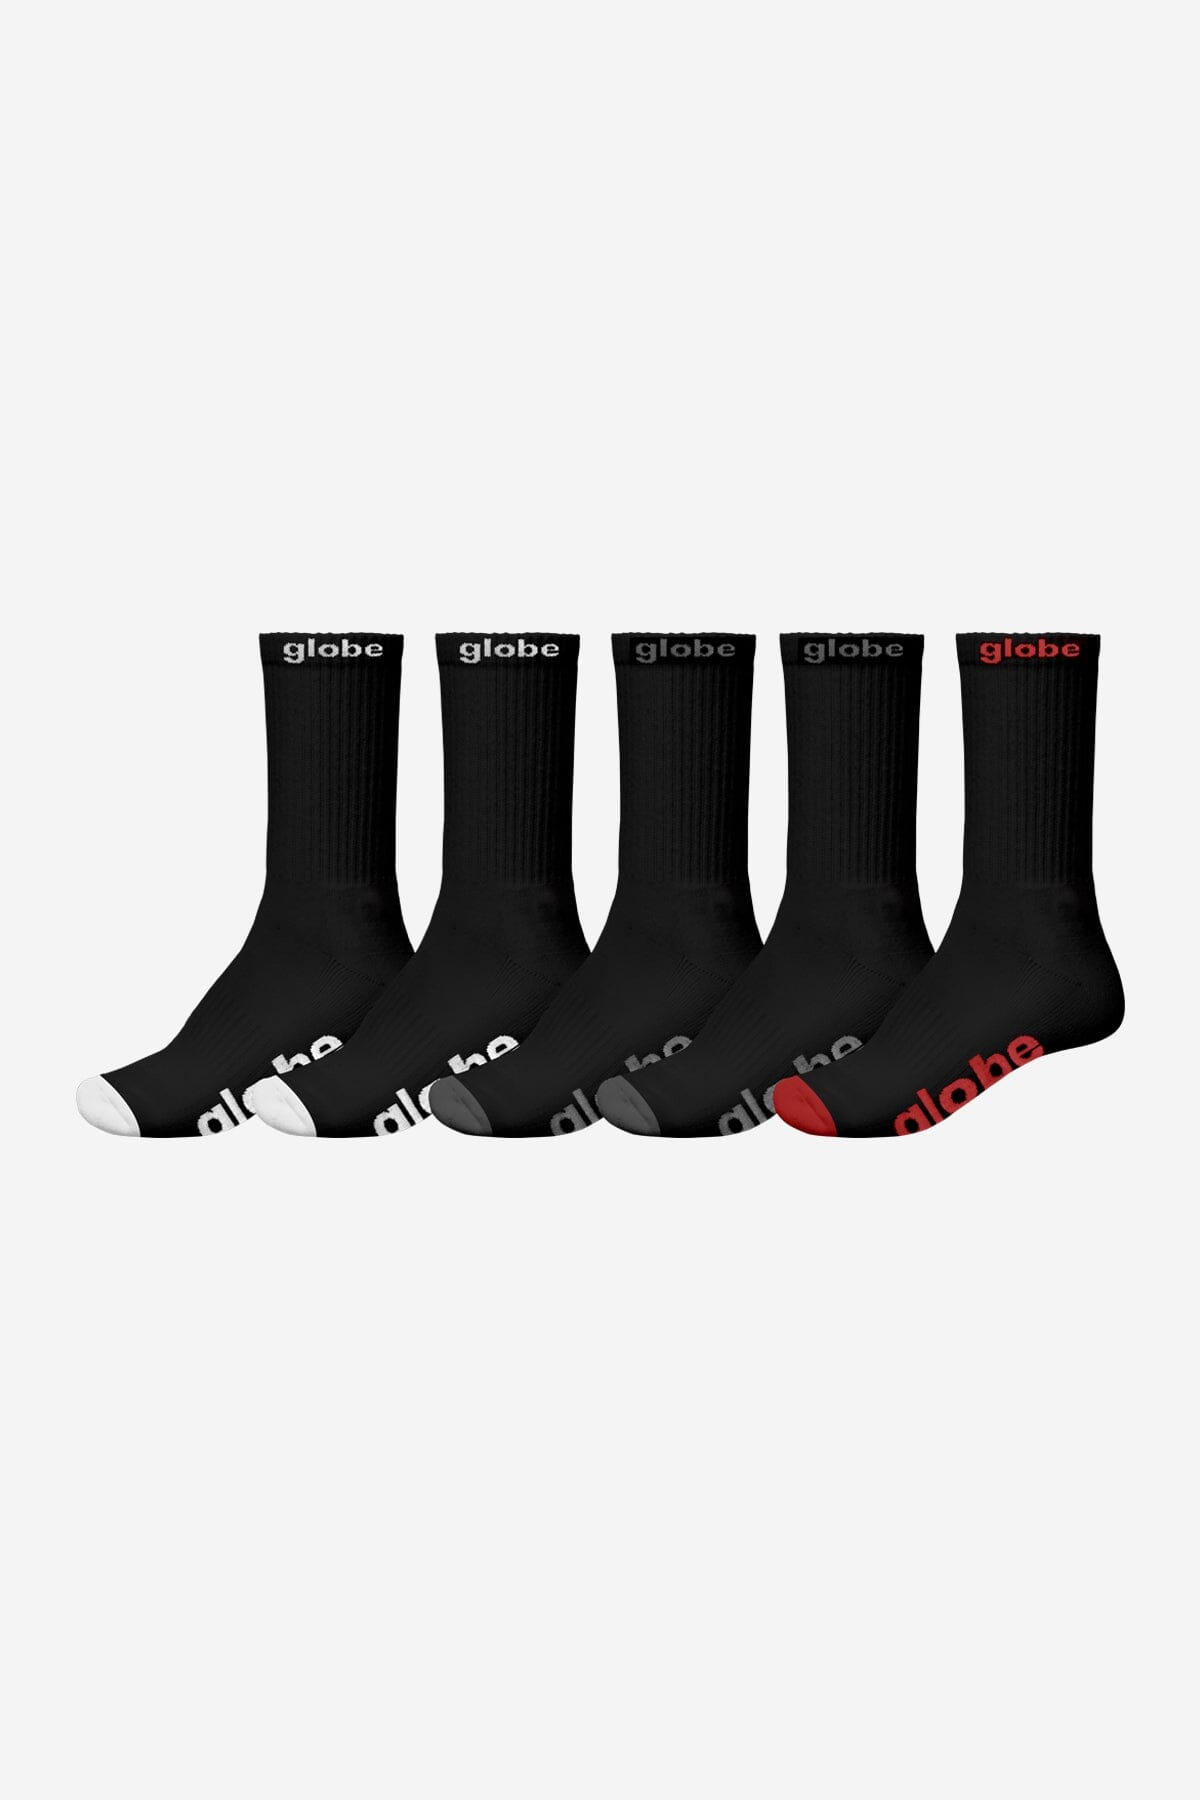 GLOBE OG Socks 5 Pack Black/Assorted Men's Socks Globe 